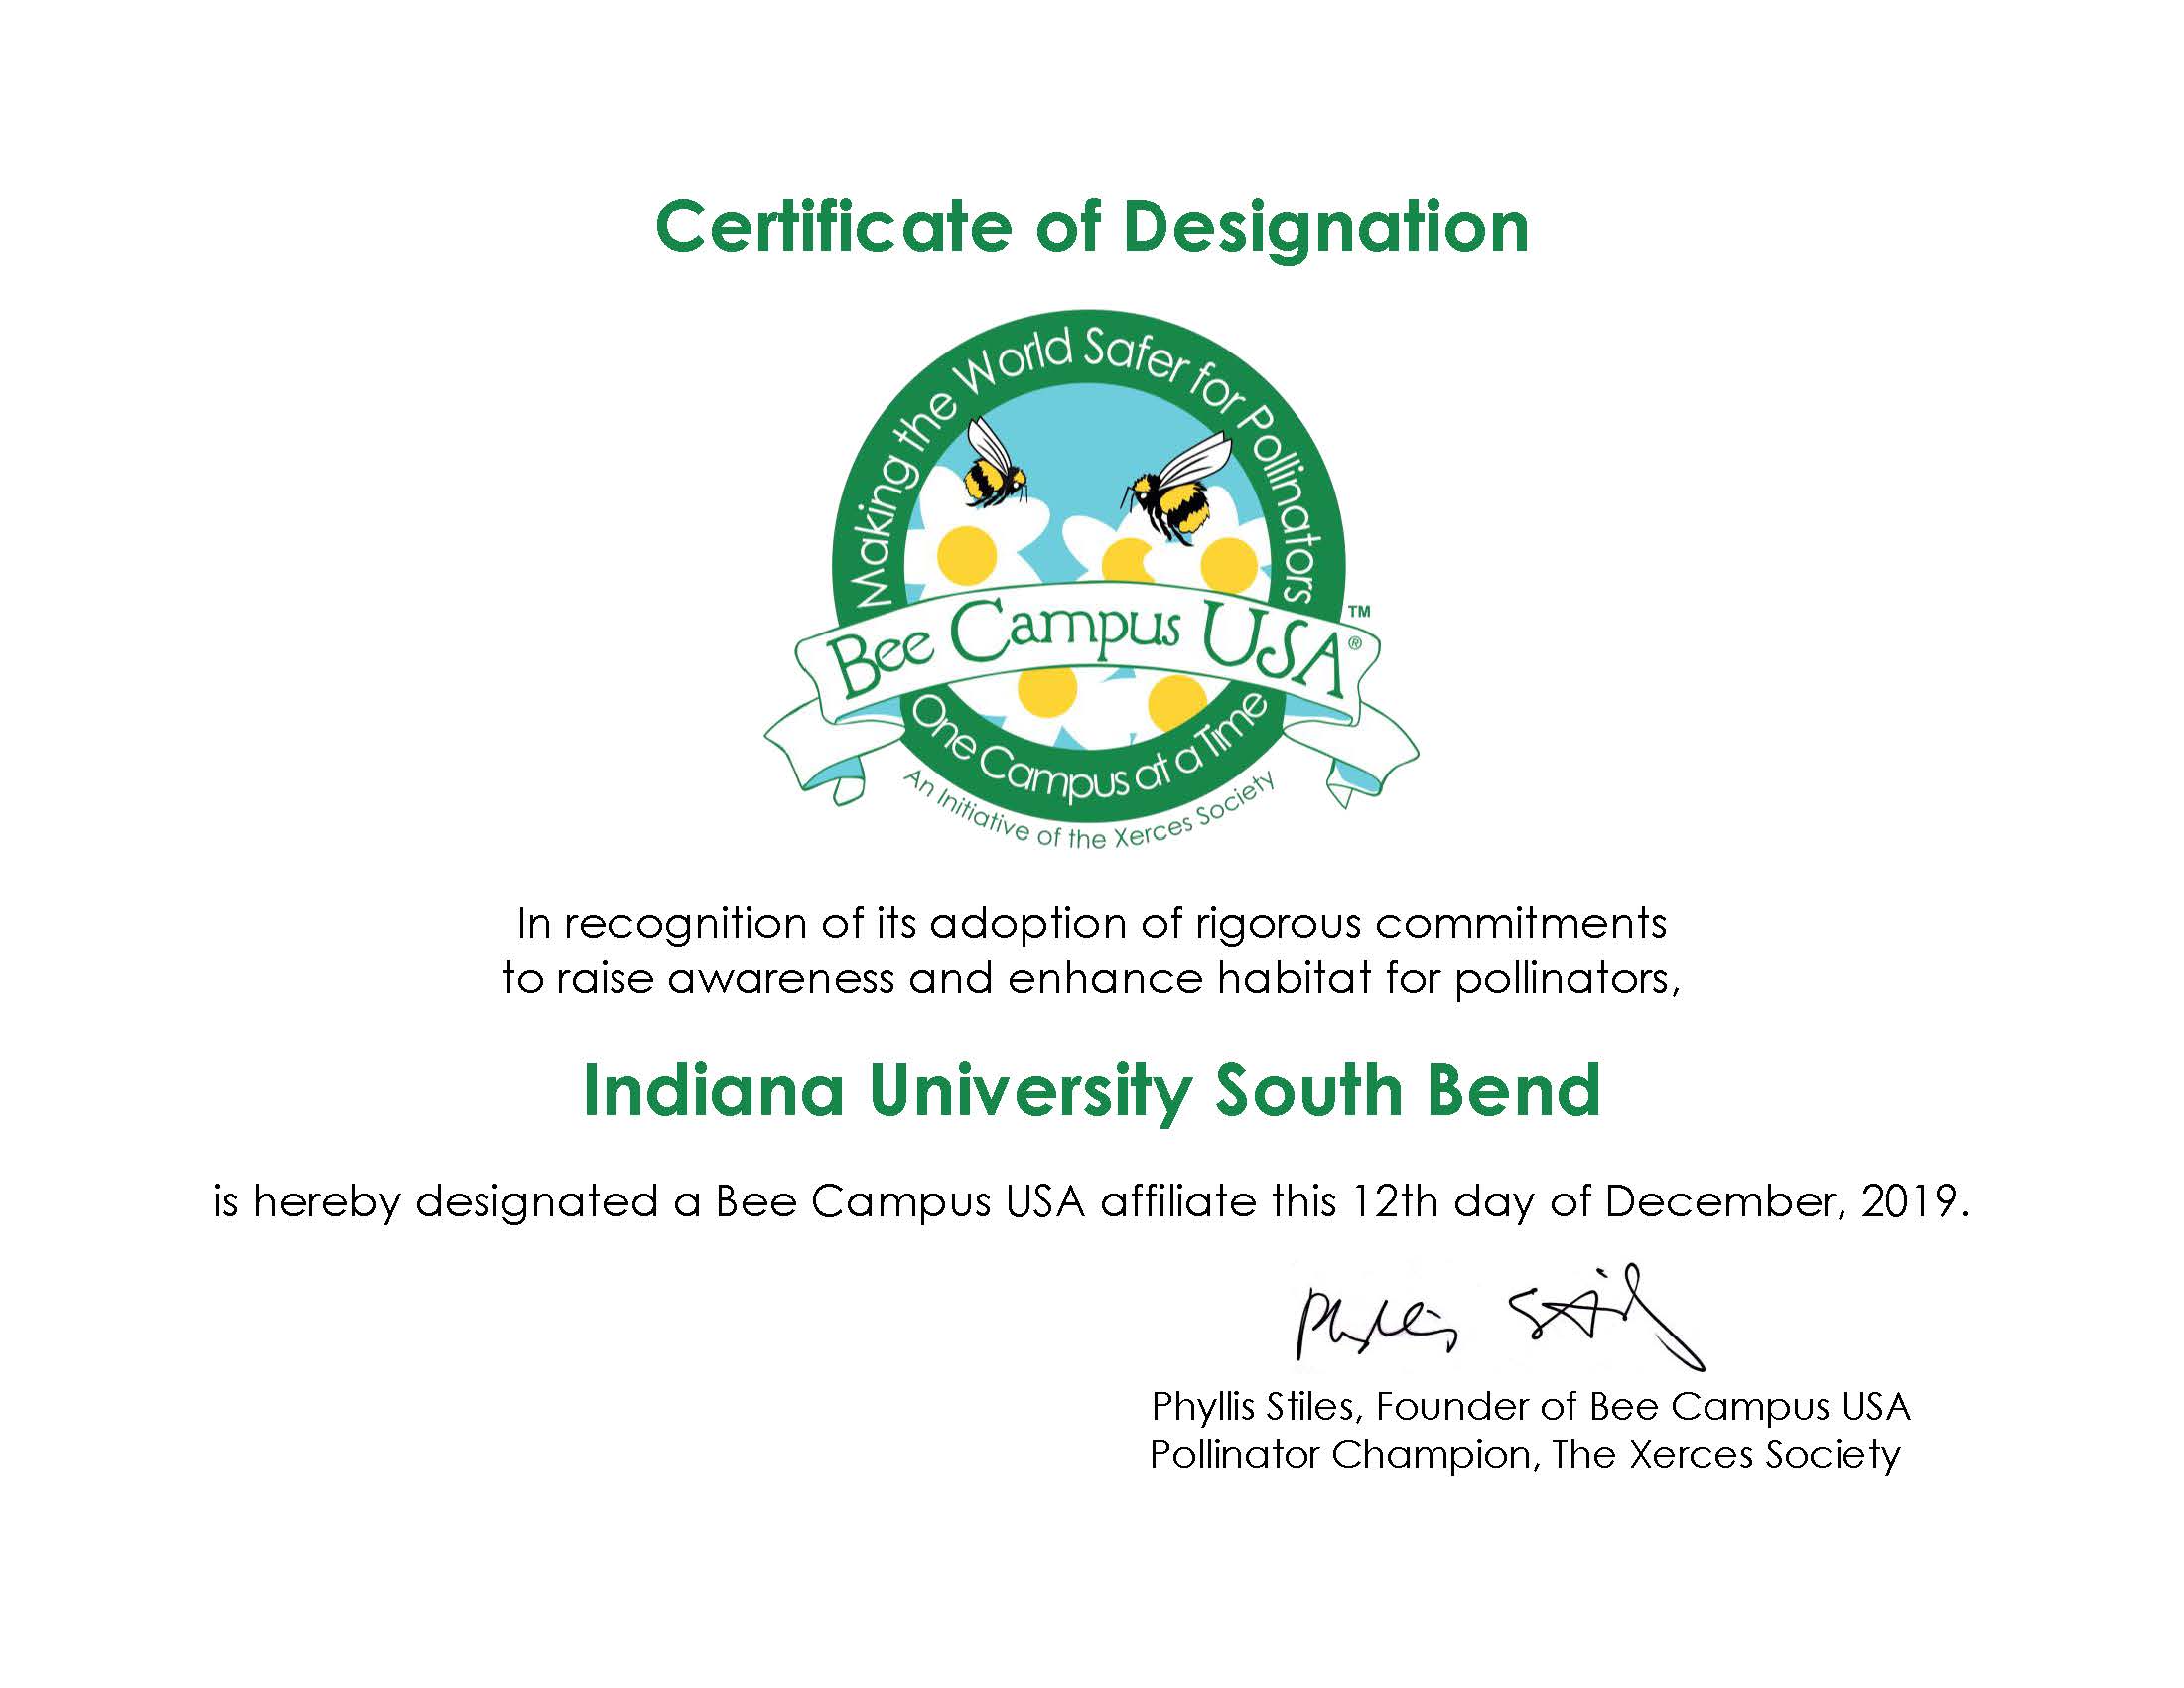 IUSB Bee Campus Certificate